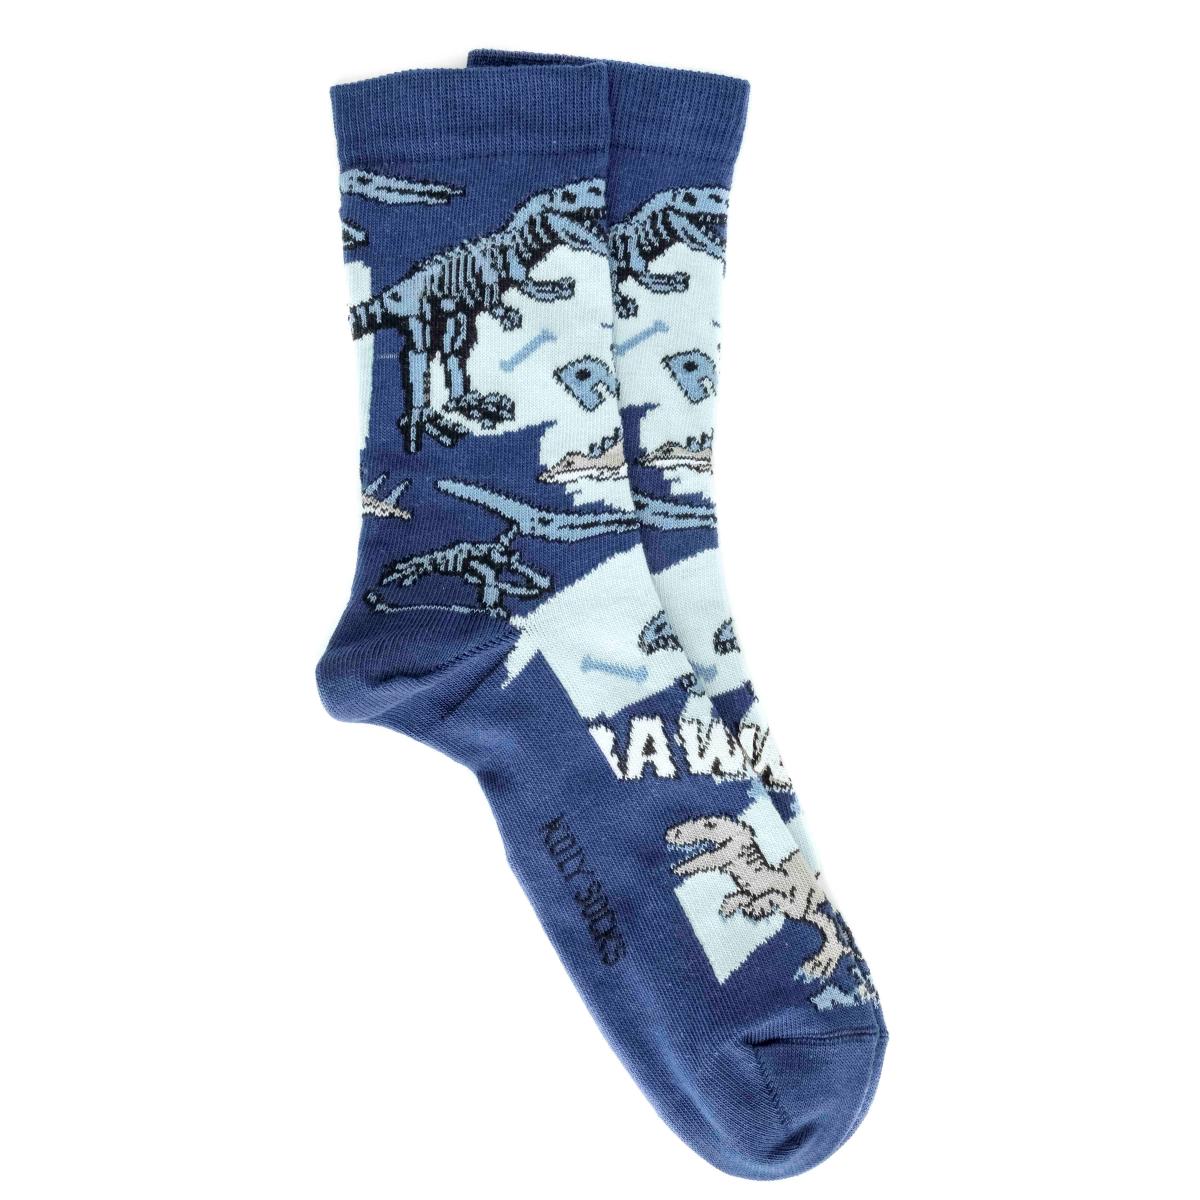 Selected image for KOLY SOCKS Čarape za muškarce Dinosaurus plave